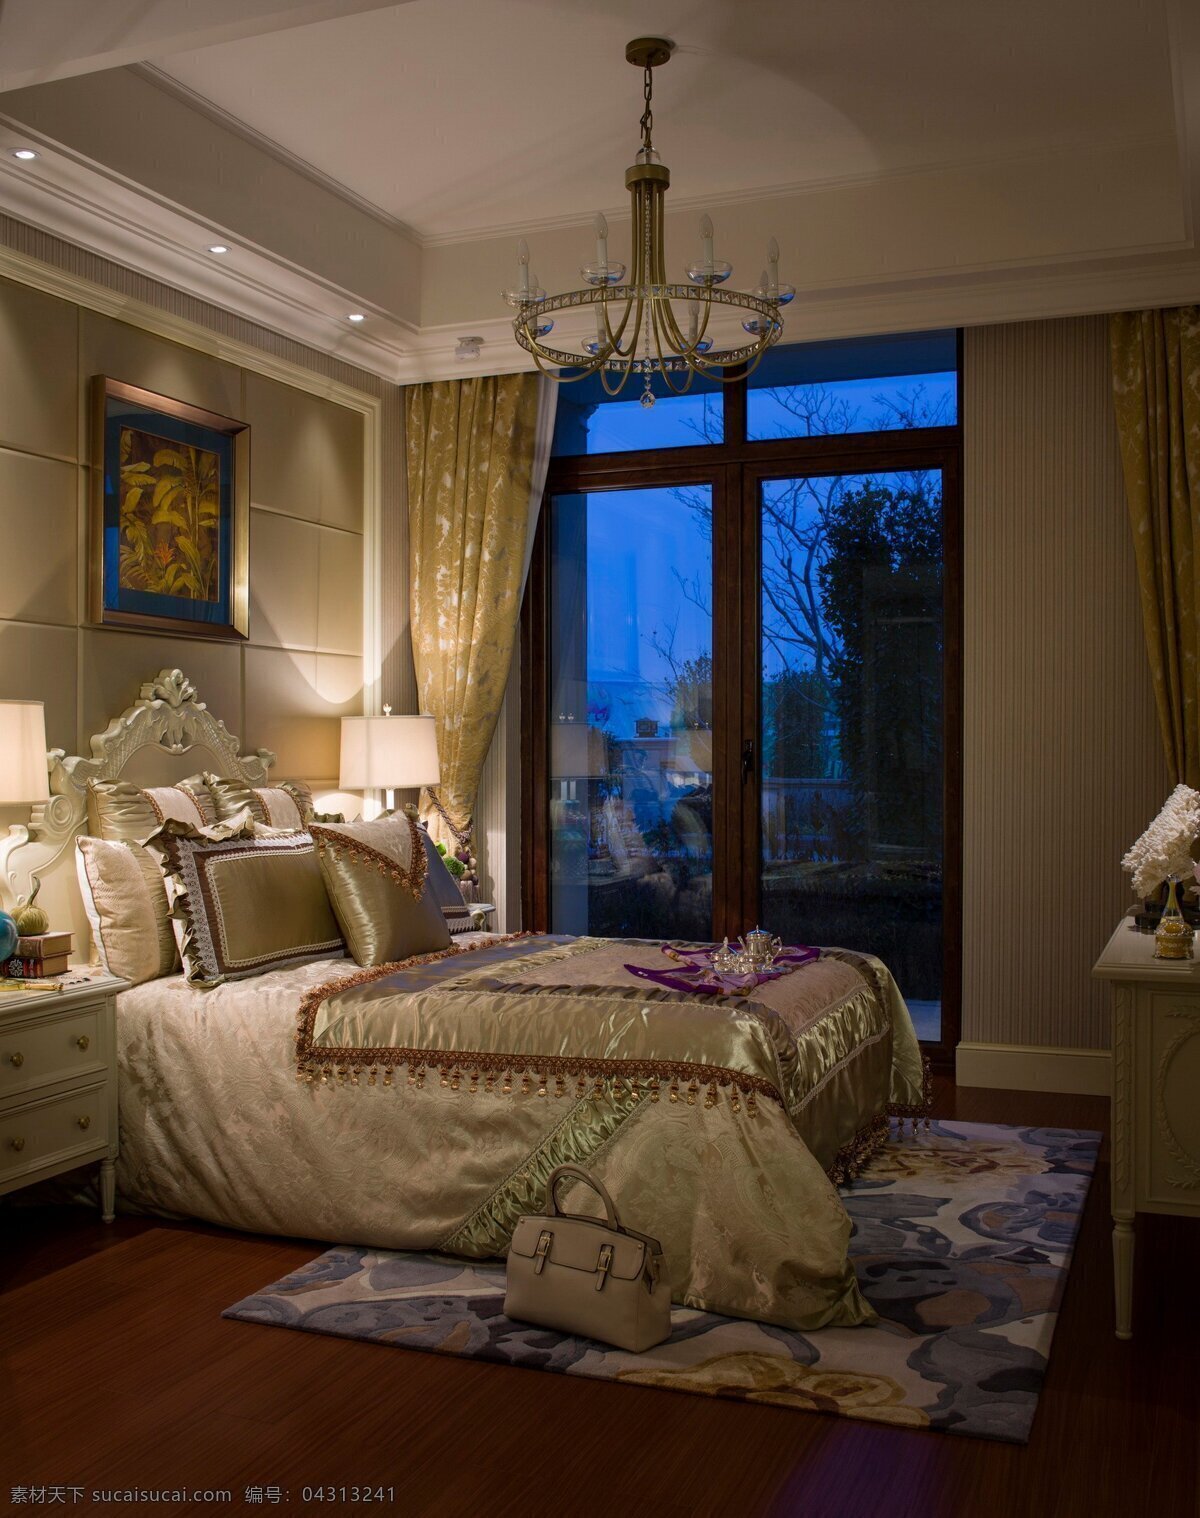 现代 时尚 卧室 蓝 金色 挂画 室内装修 效果图 卧室装修 木地板 蓝色花纹地毯 透明吊灯